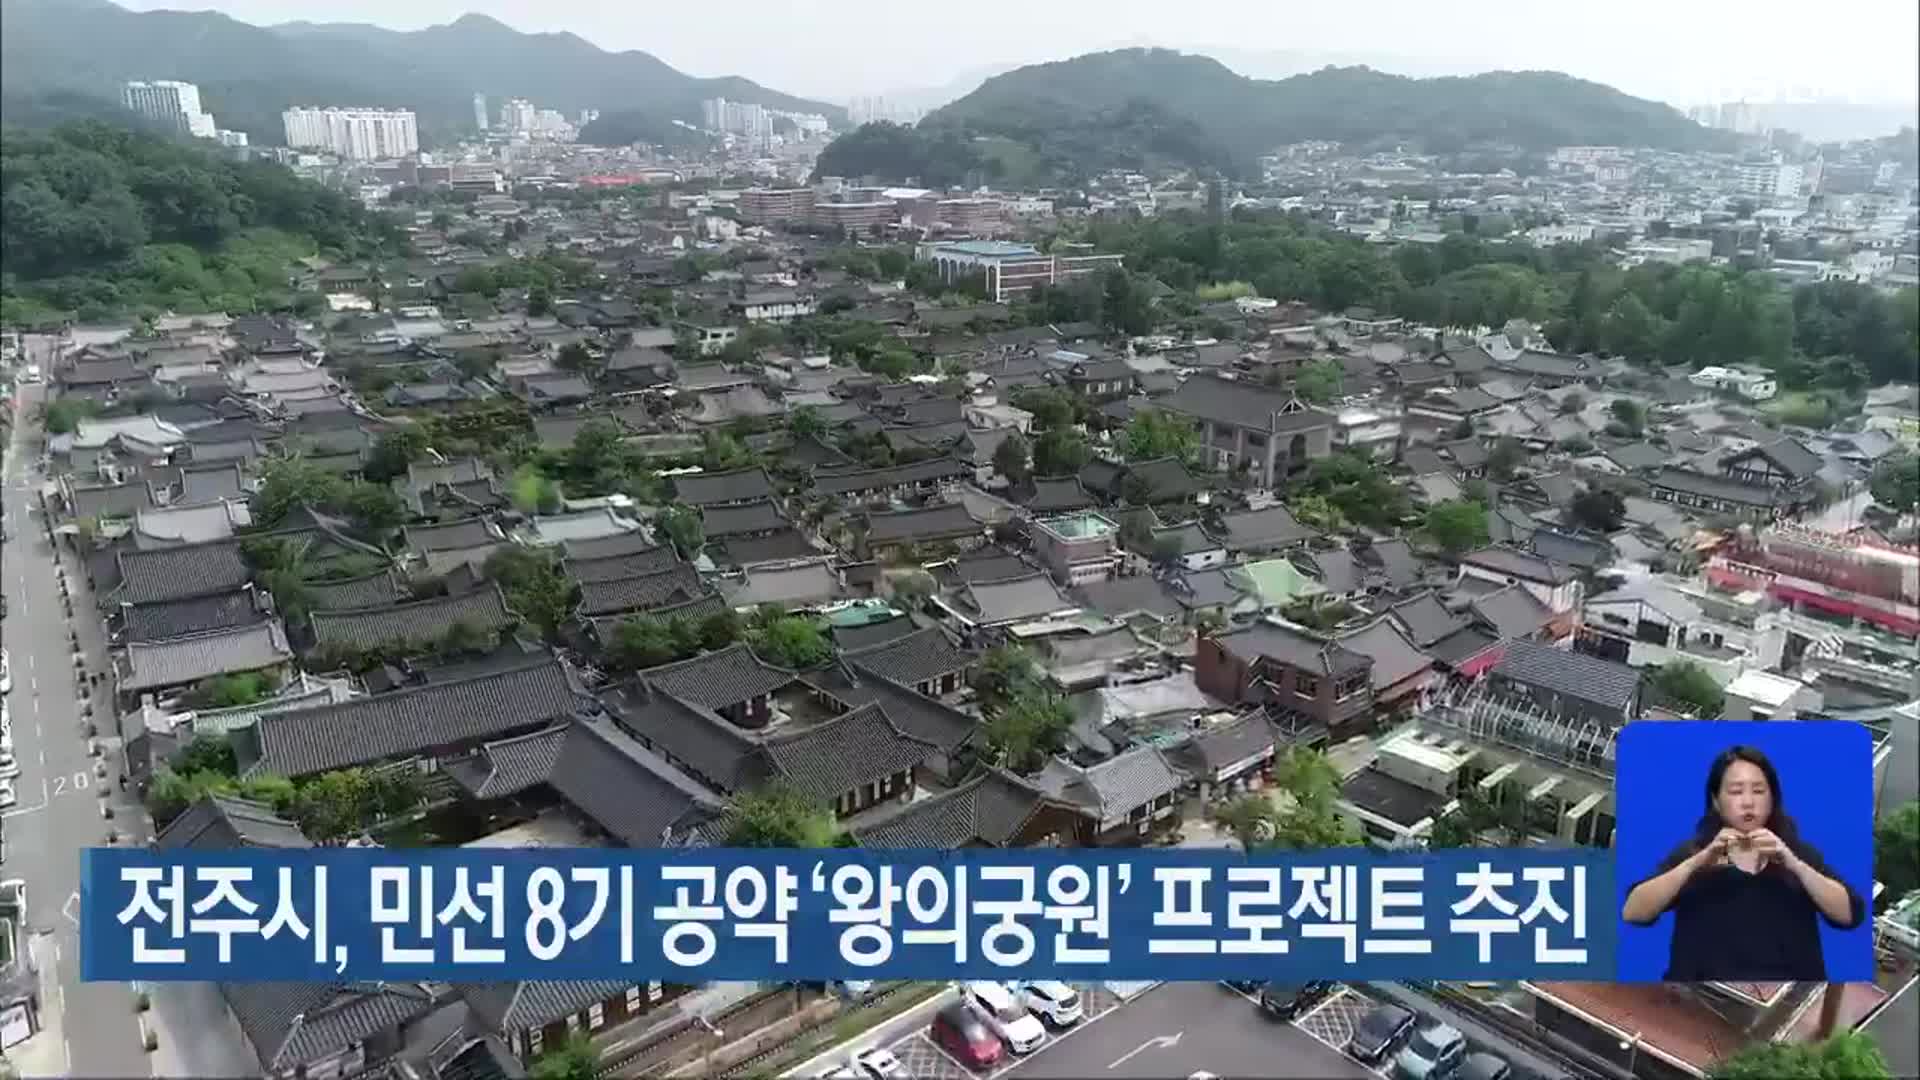 전주시, 민선 8기 공약 ‘왕의궁원’ 프로젝트 추진